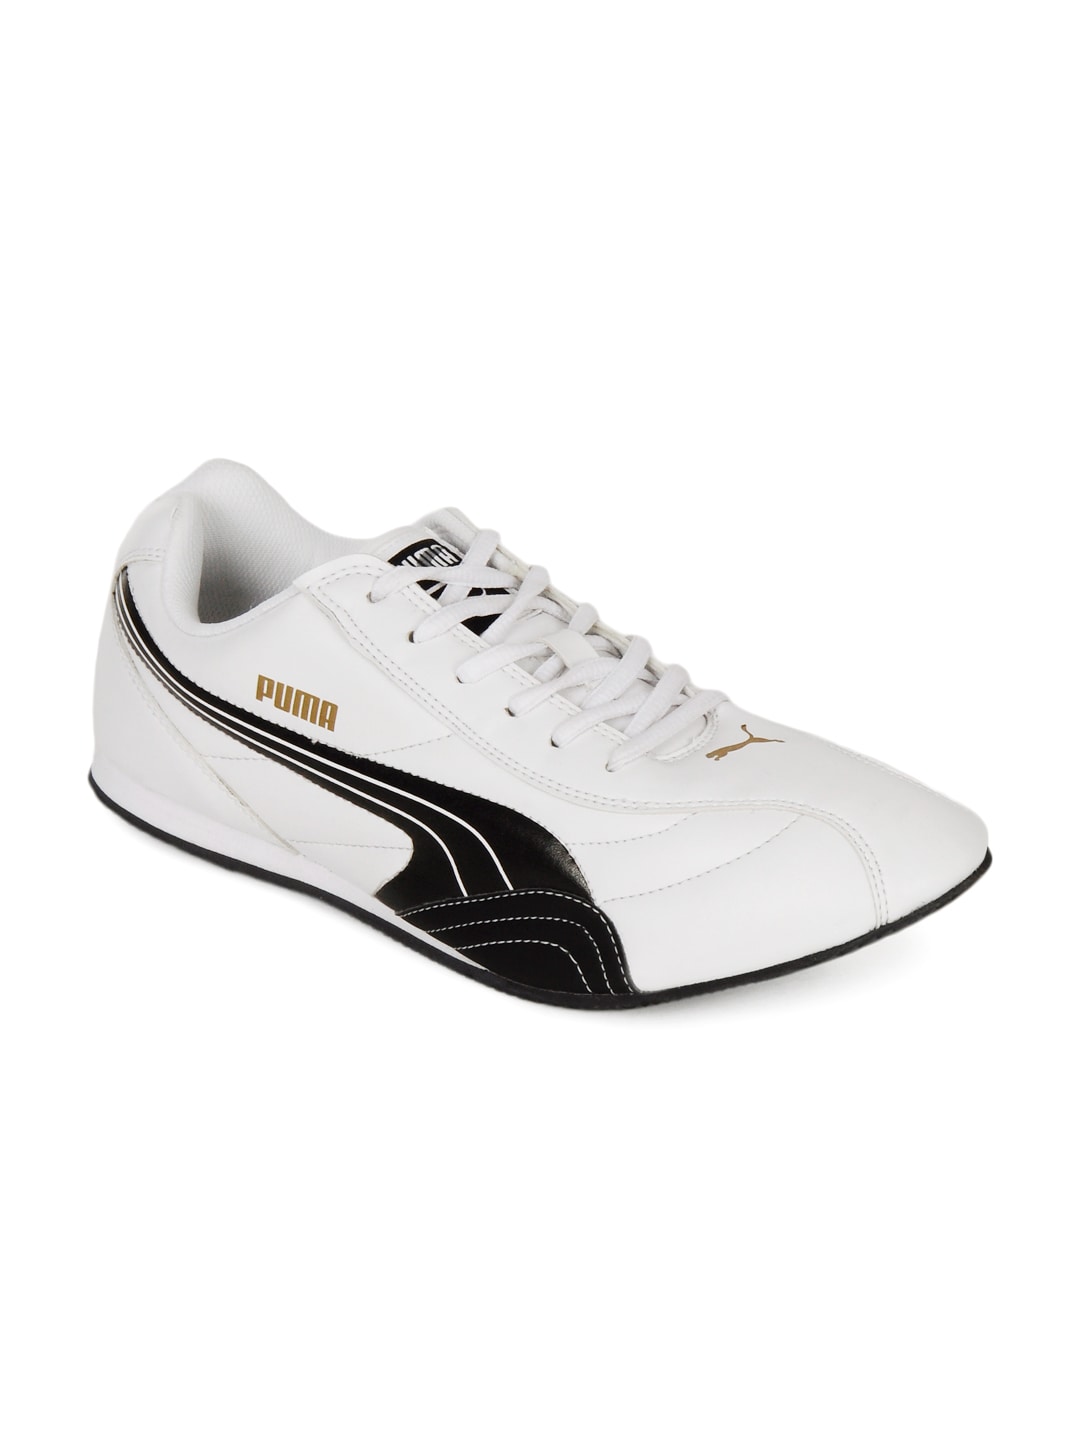 Puma Men Wirko White Sports Shoes